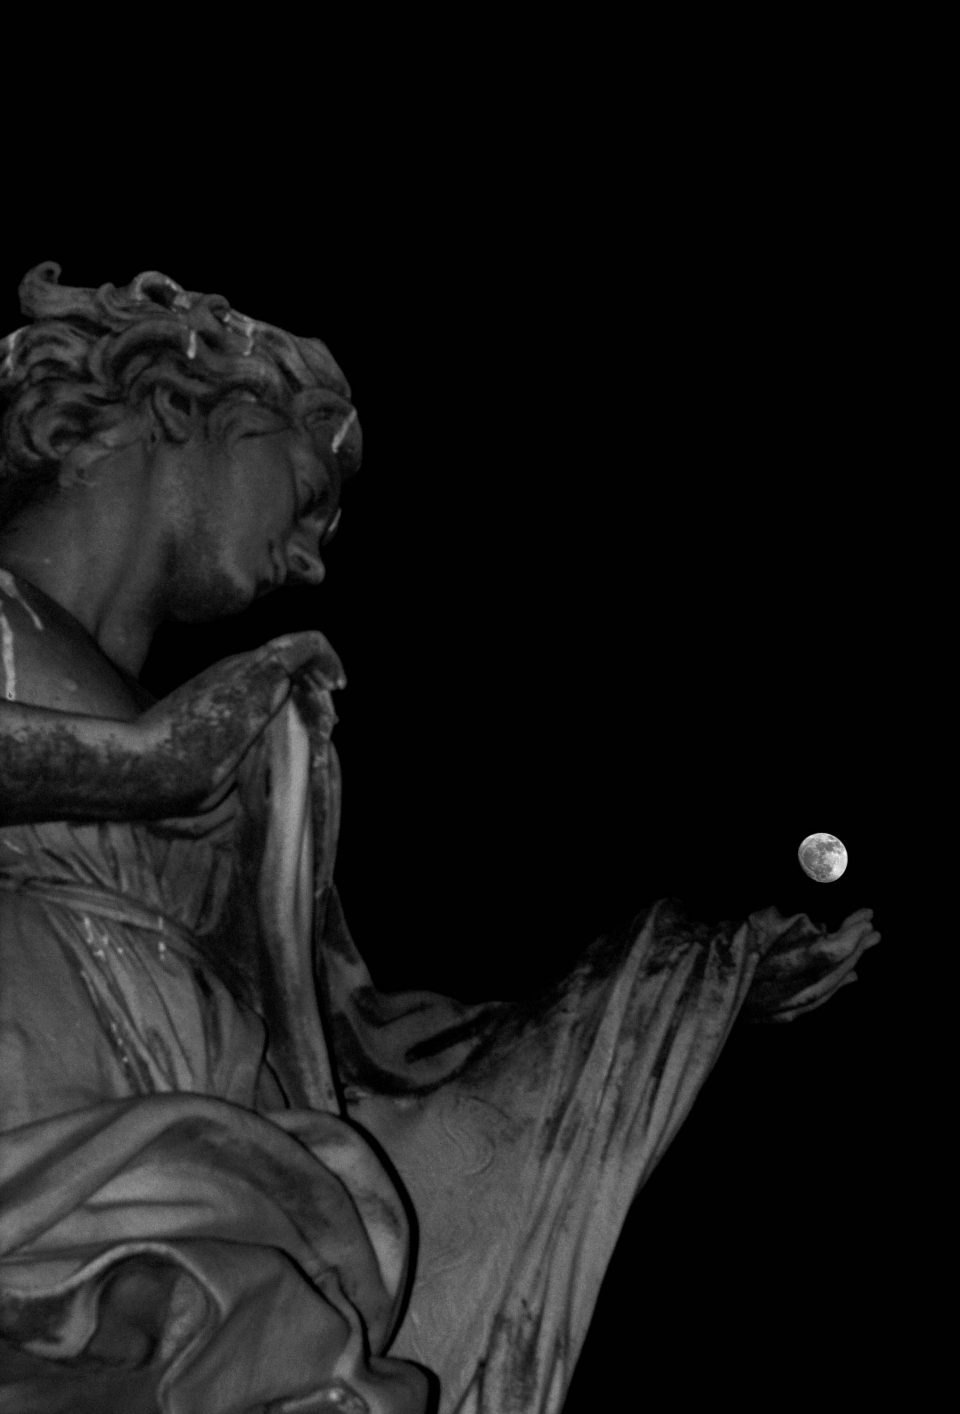 Statua - Statua e luna - Roma - Architettura - fotografare l'architettura - fotografare la città - istanti in viaggio - fotografia in viaggio